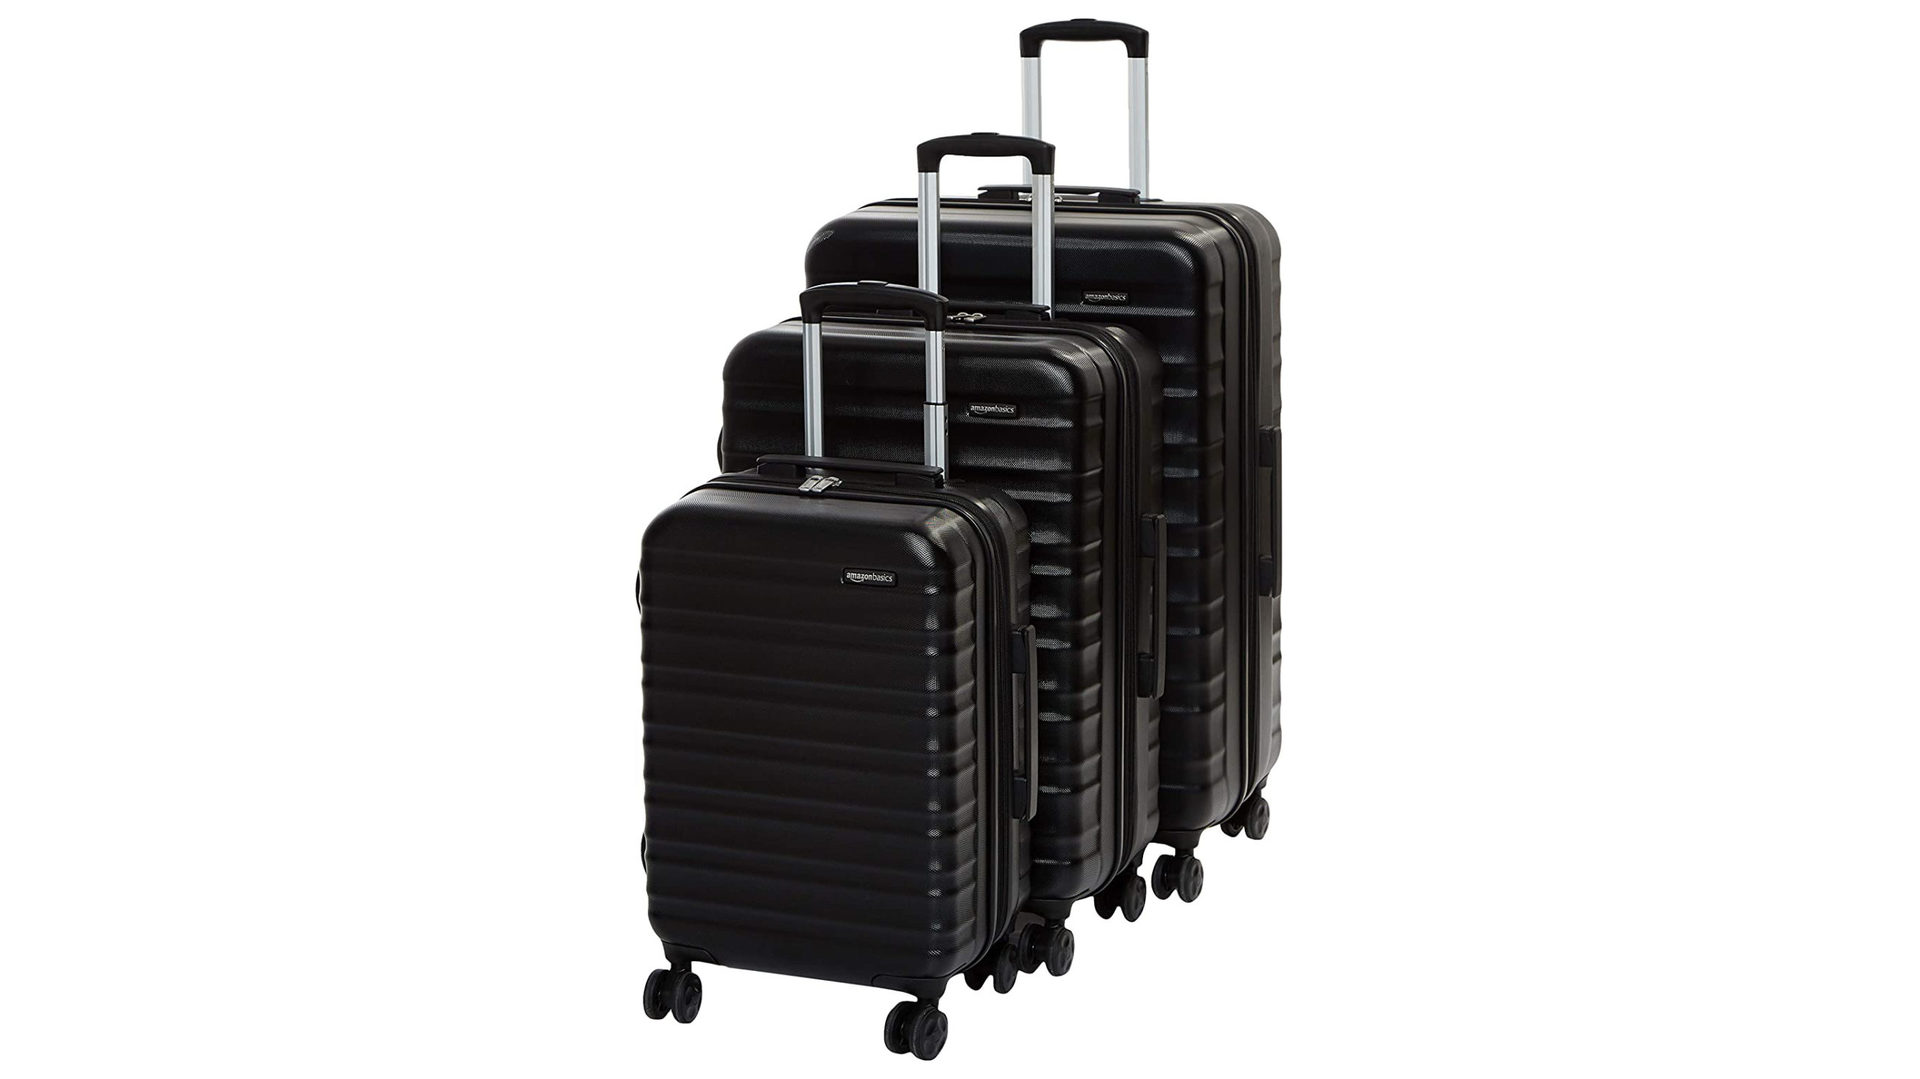 Amazon Basics luggage - The best travel gadgets